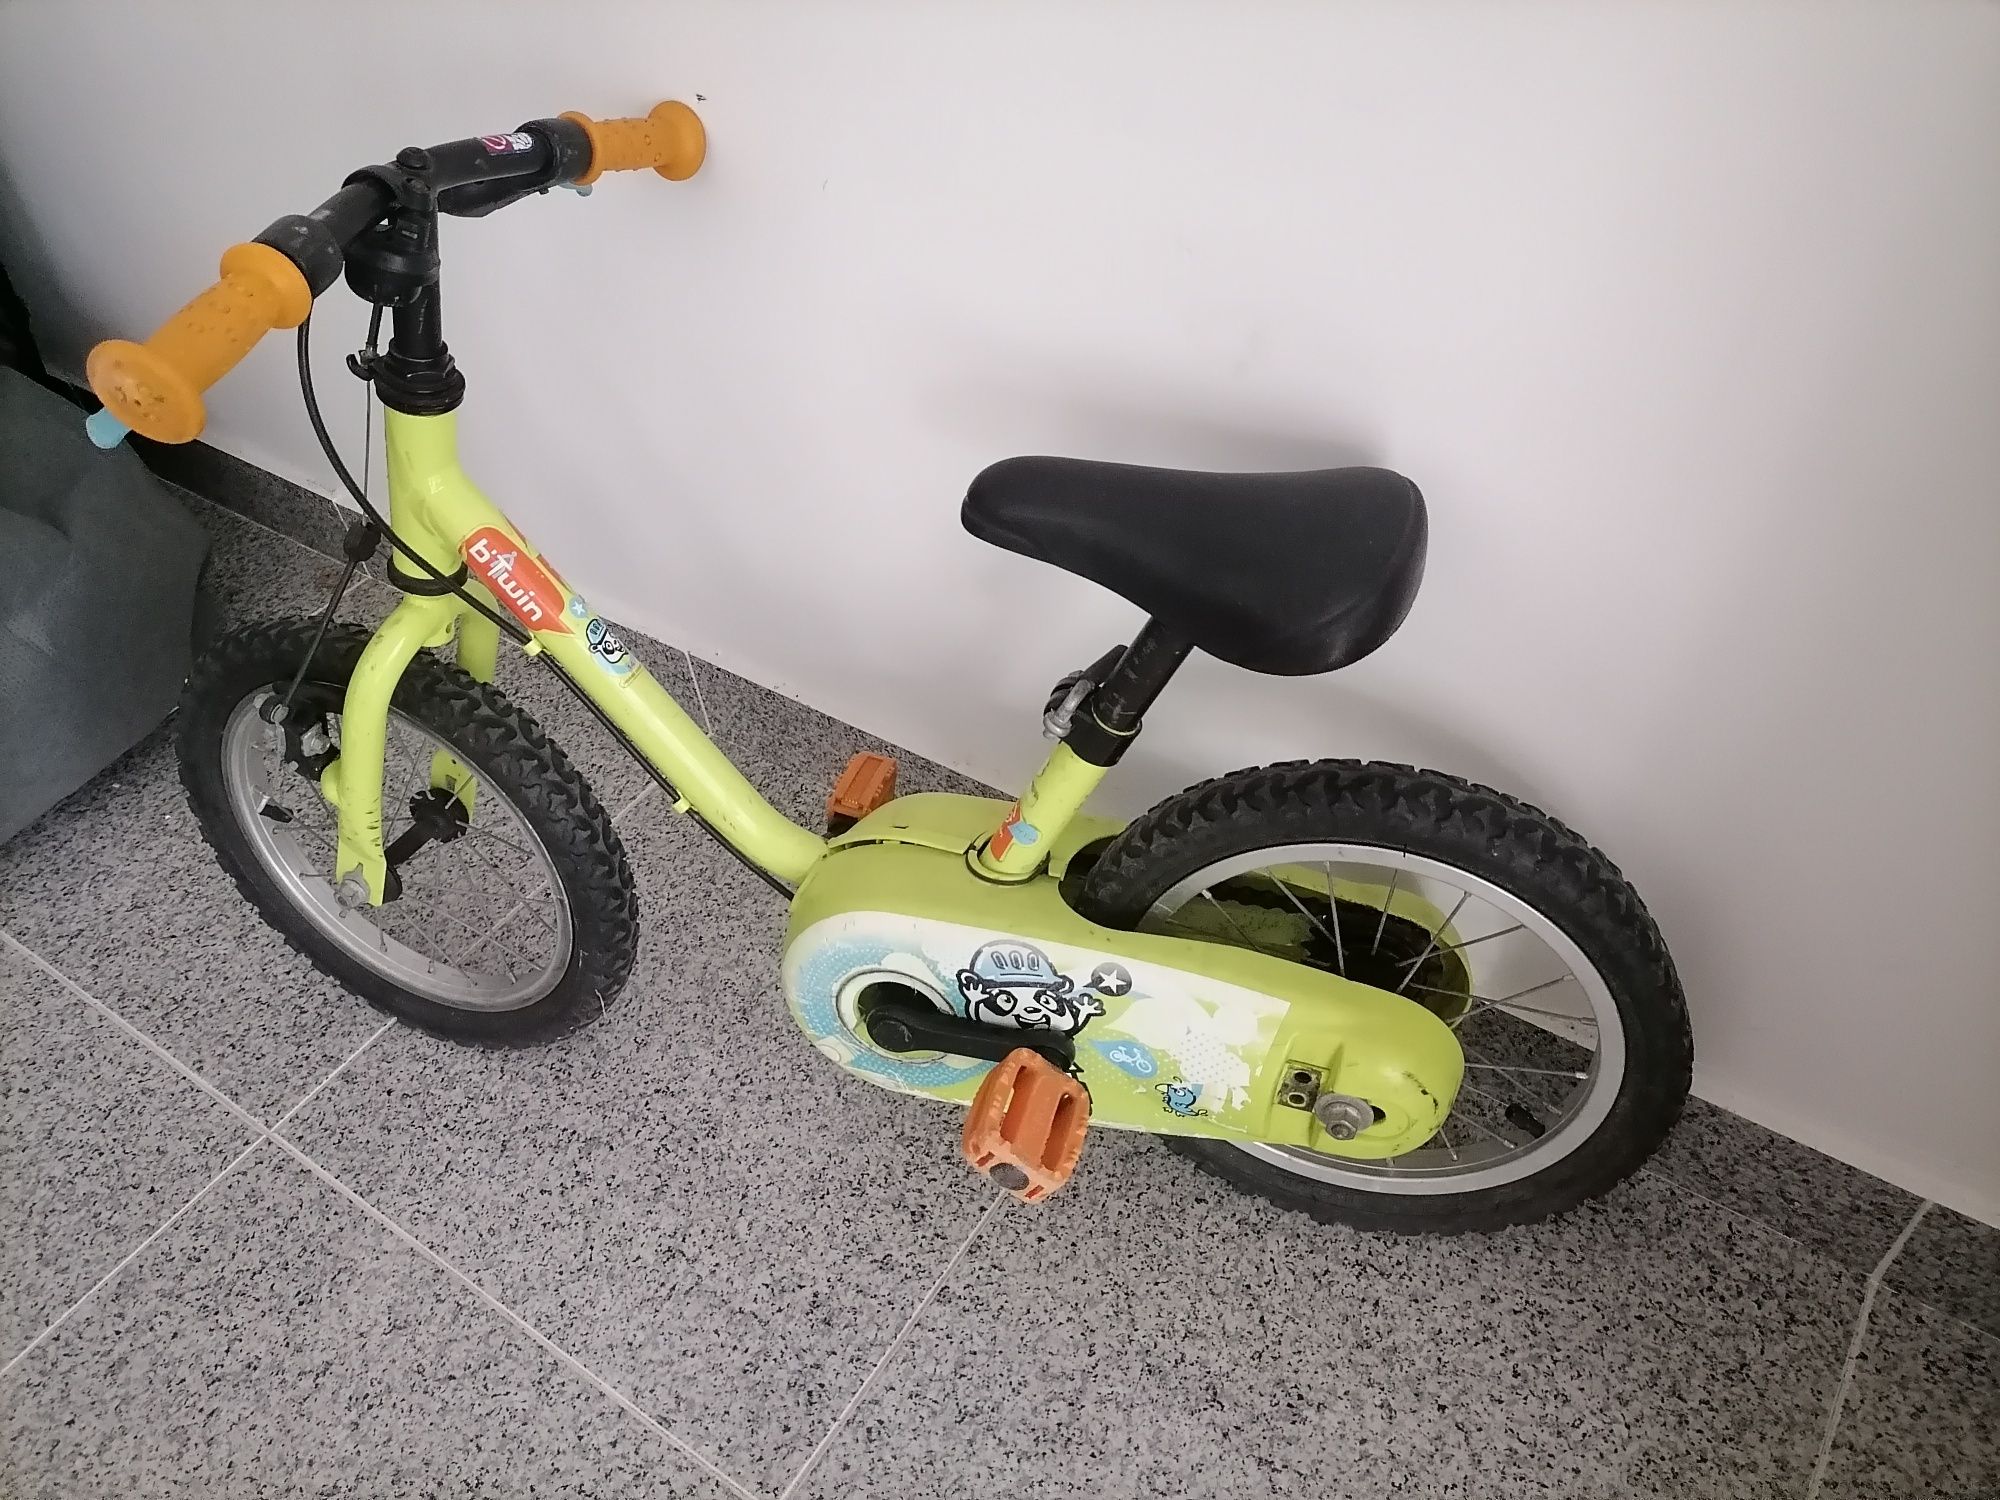 Bicicleta criança - 15€